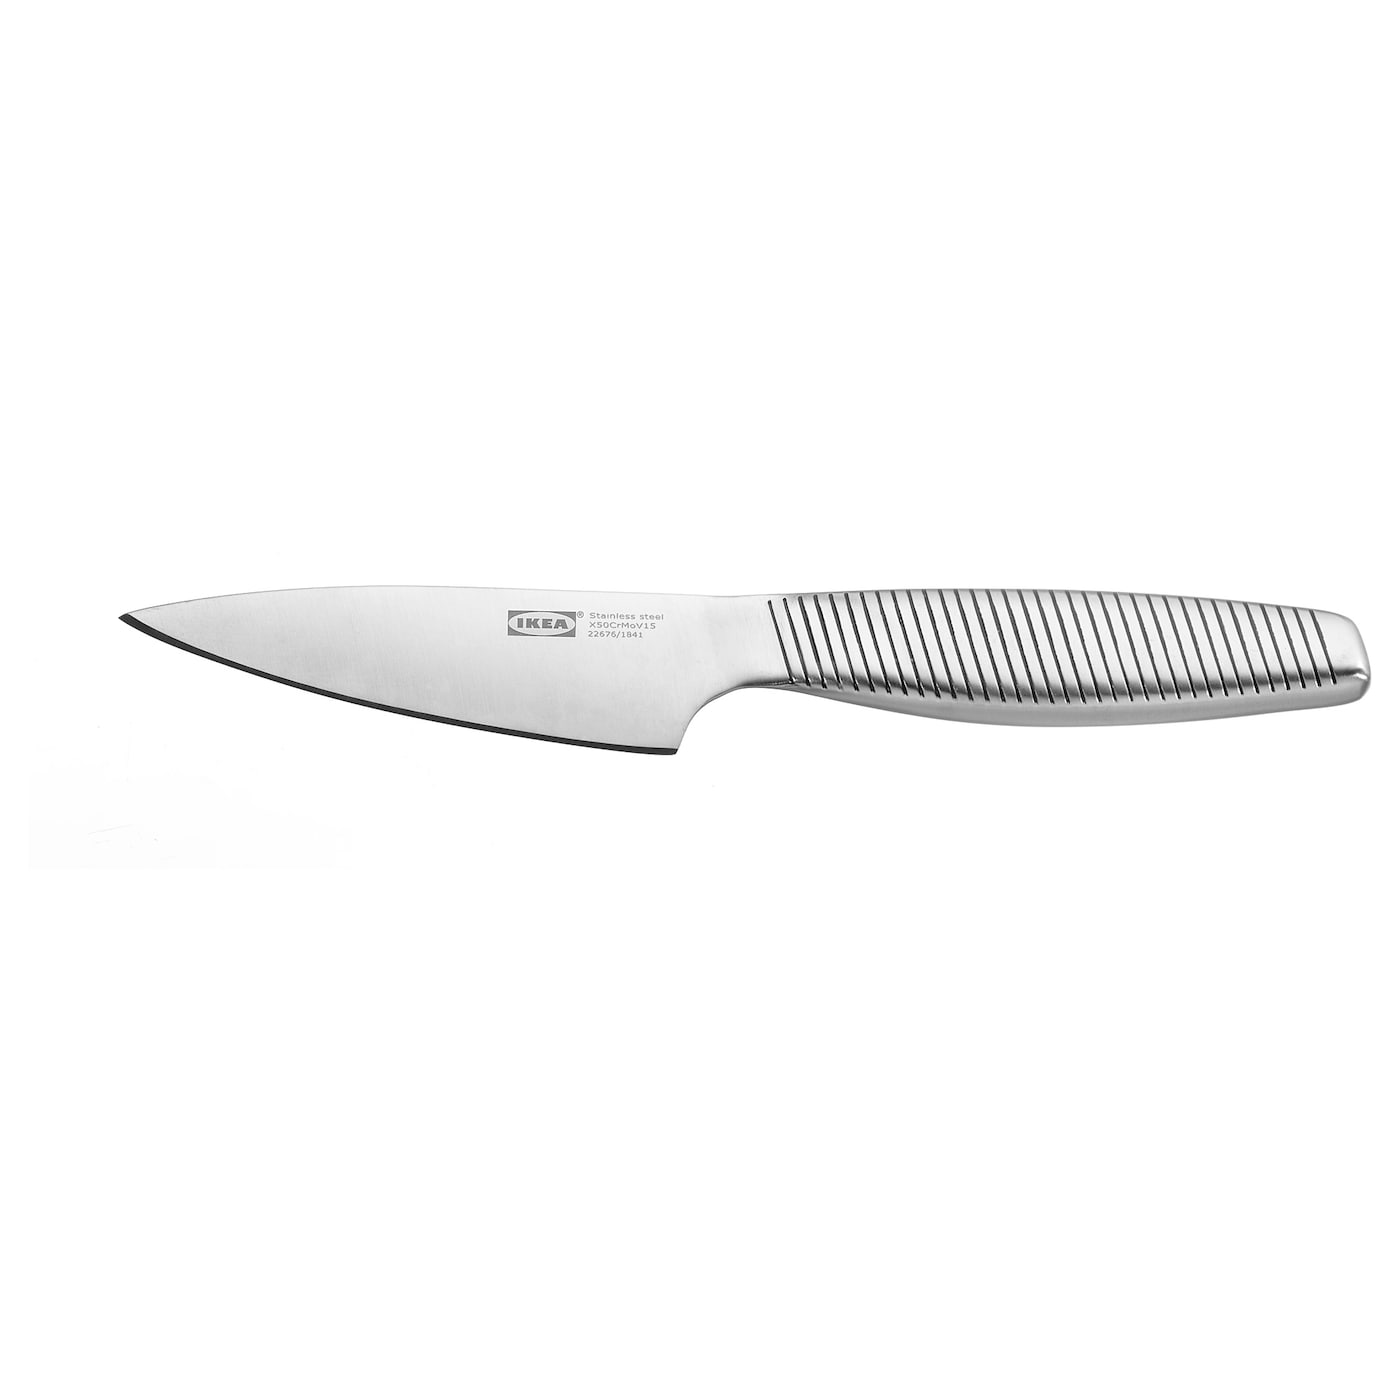 IKEA 365+ ИКЕА/365+ Нож для чистки овощ/фрукт, нержавеющ сталь, 9 см IKEA нож ikea 365 23 см серебряный